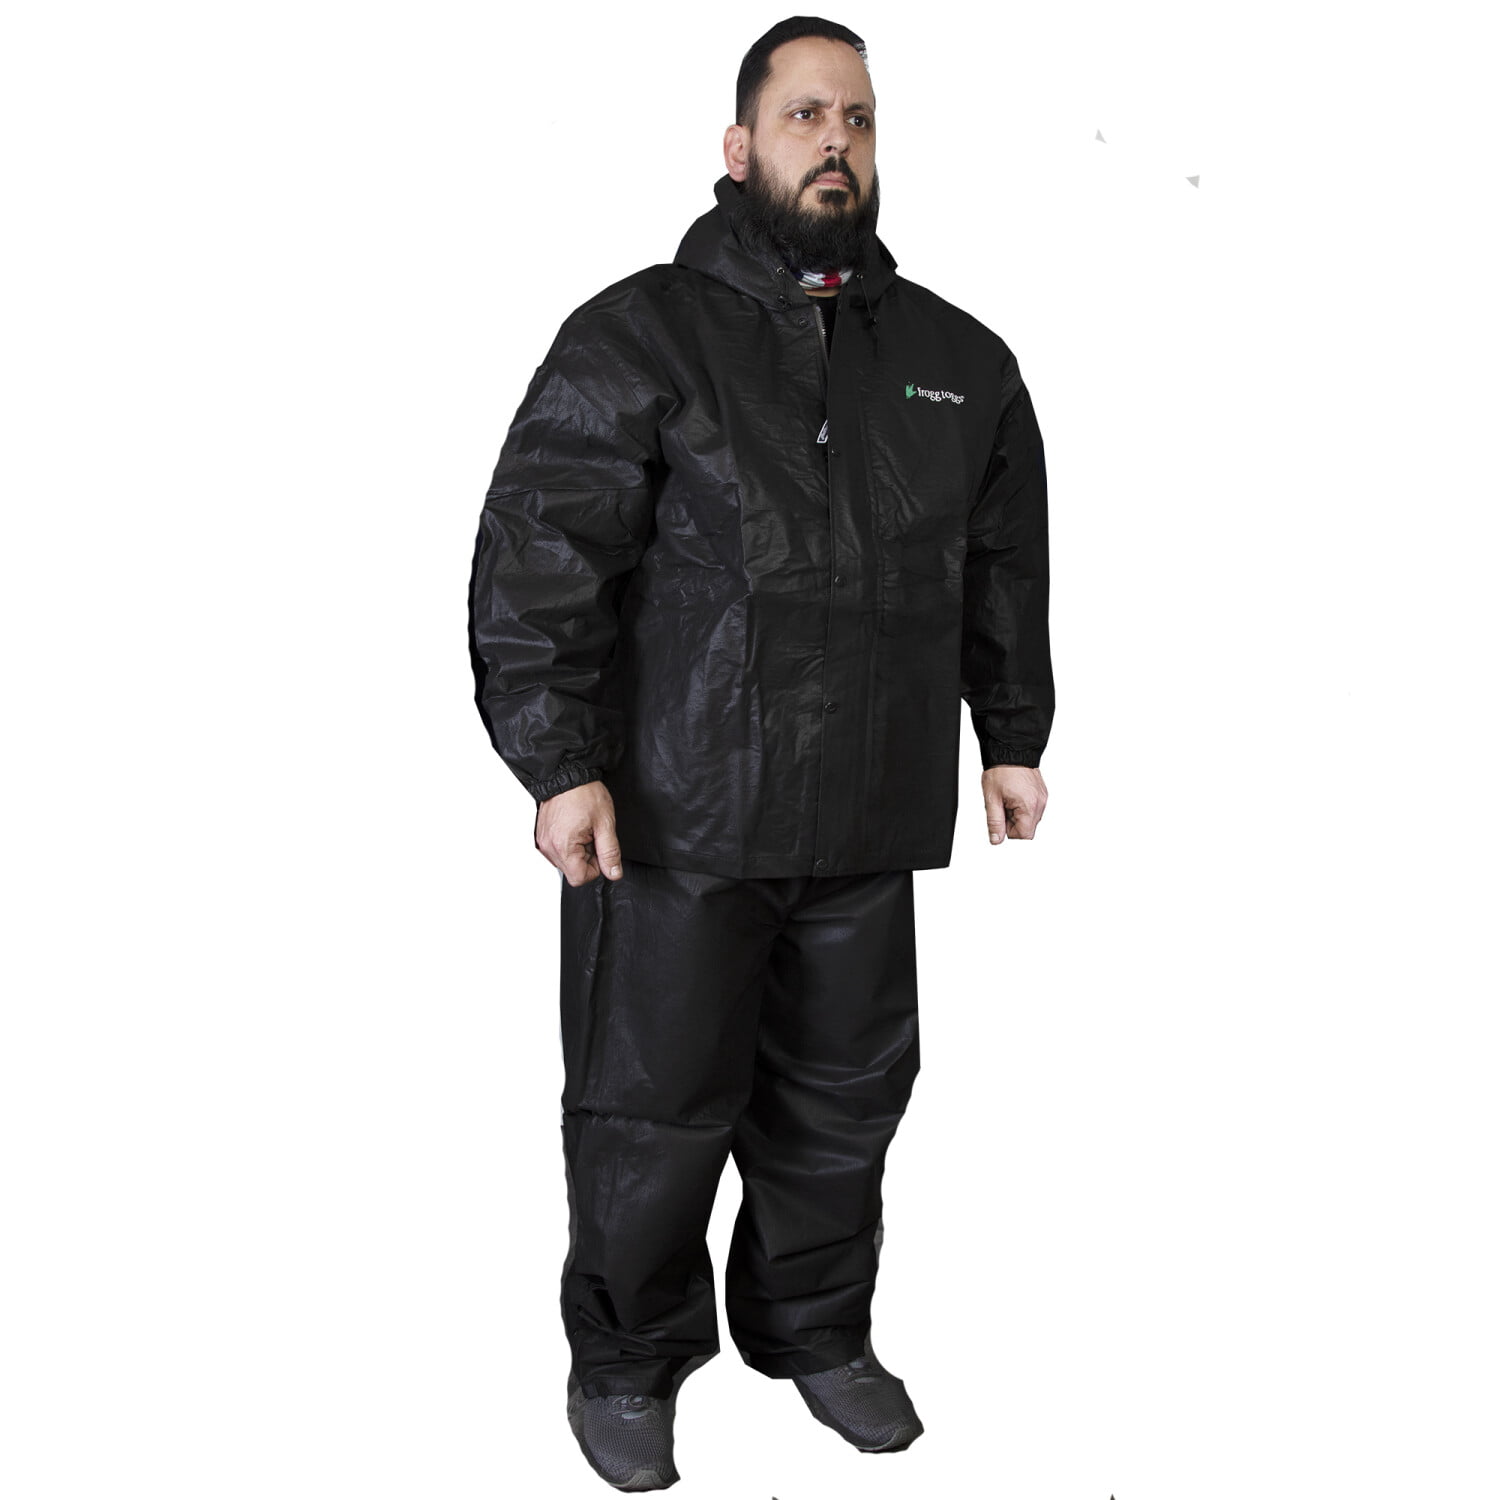 M/L Frogg Toggs Pro Lite Rain Suit Black 